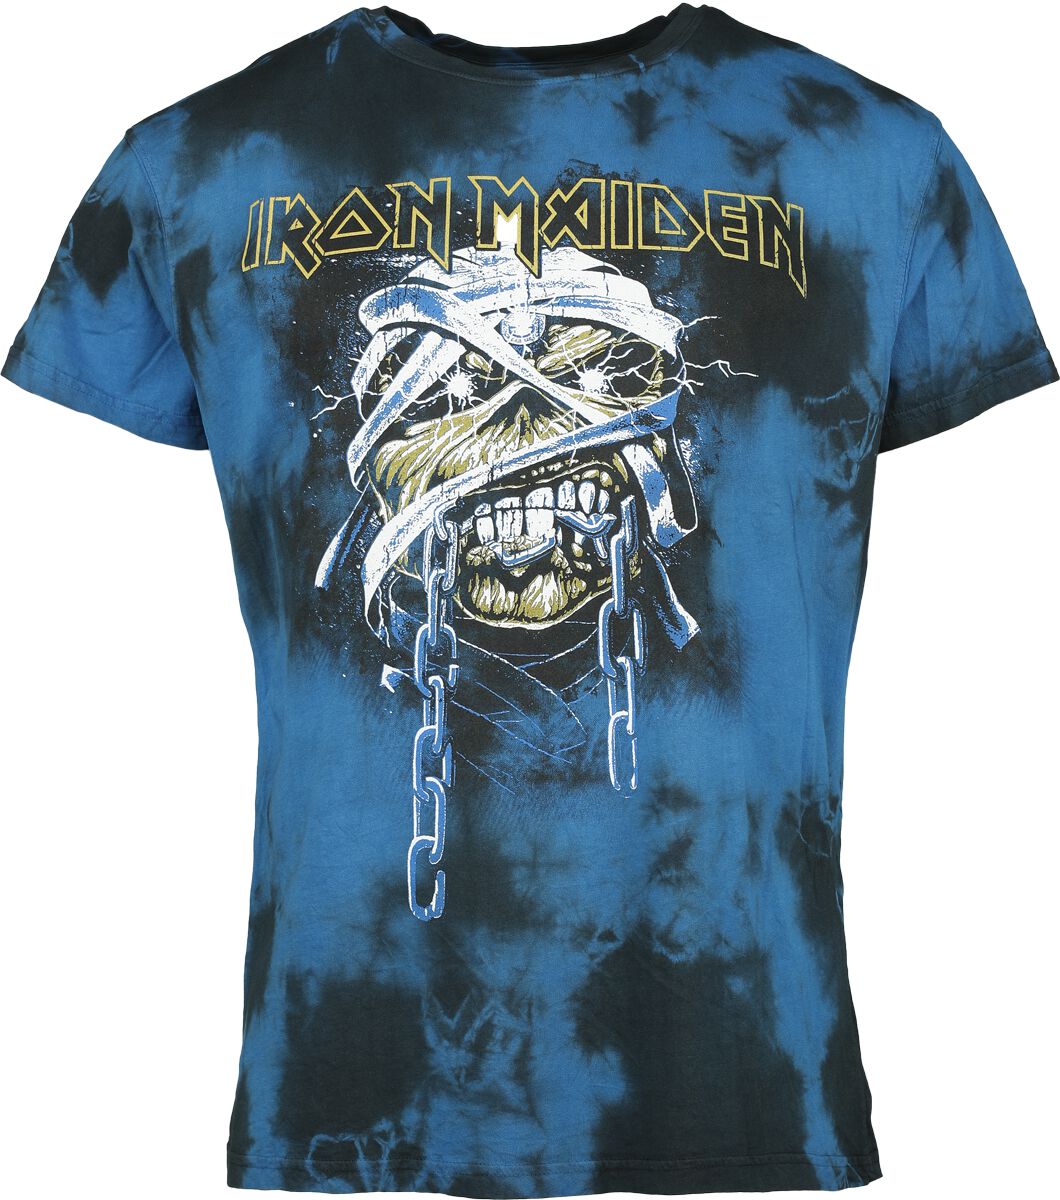 Iron Maiden T-Shirt - Powerslave - Mummy Head - S bis XXL - für Männer - Größe XXL - schwarz/blau  - Lizenziertes Merchandise!